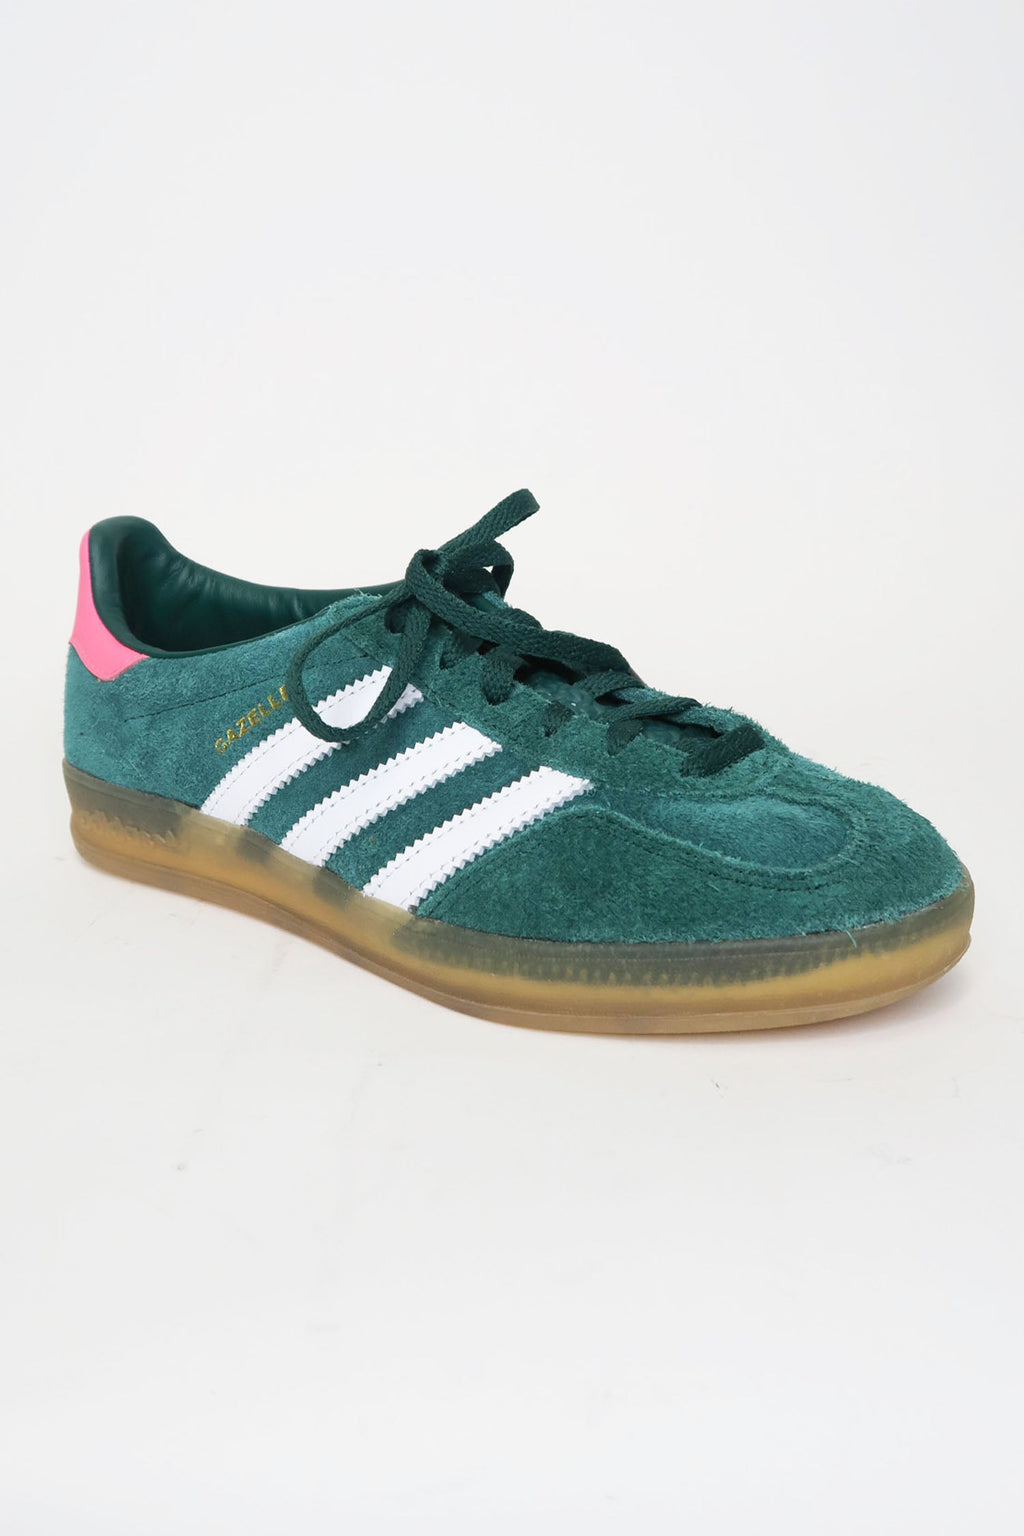 Adidas Gazelle Green Low Top Sneakers sz 6